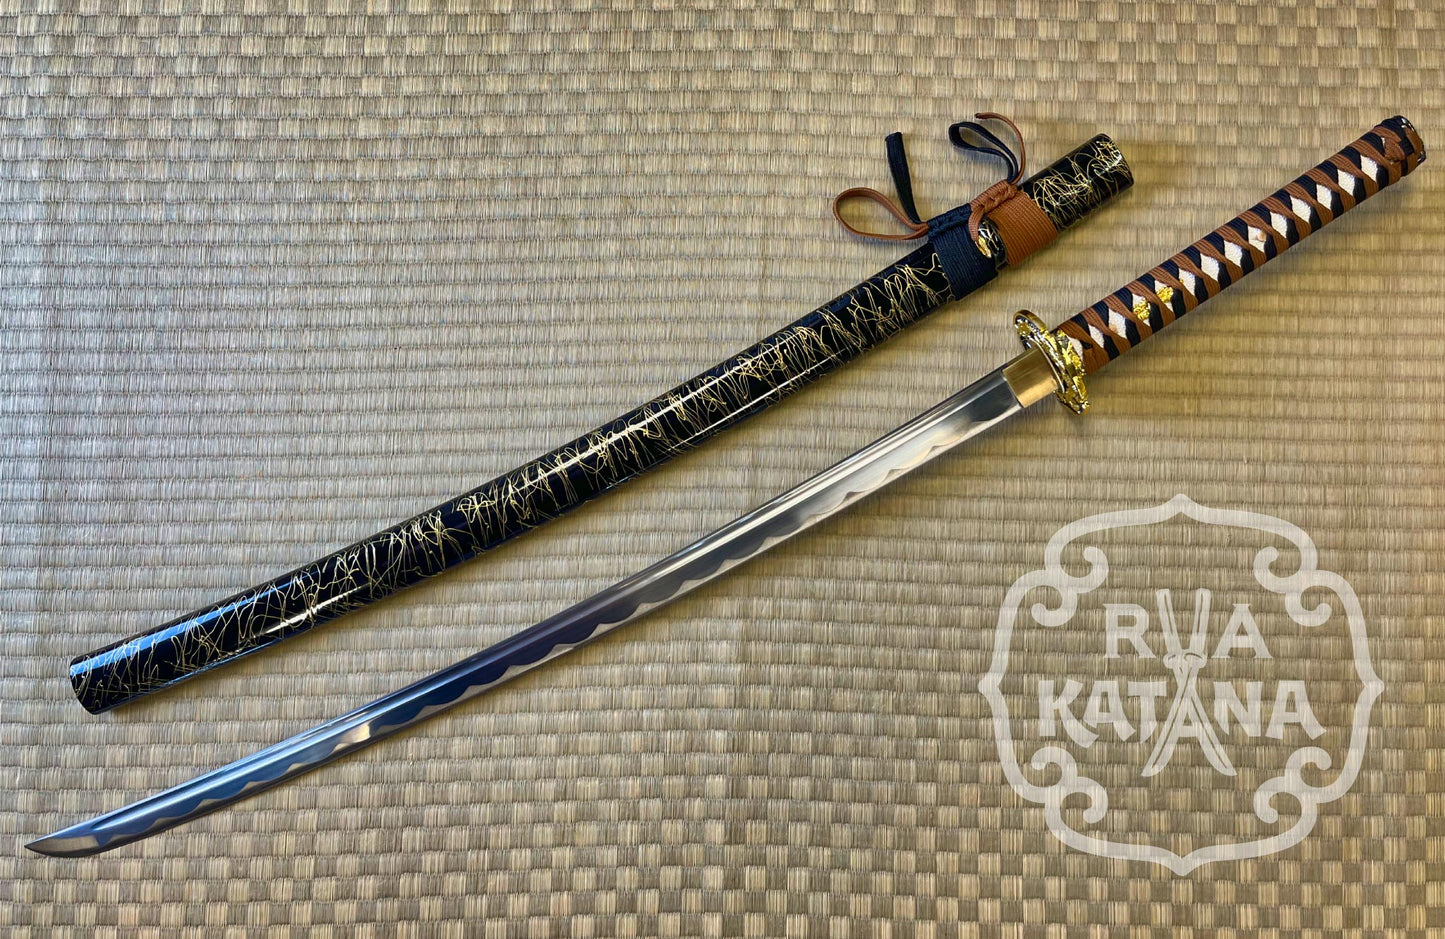 Katana, Black and Tan Dragon, 1060 Steel